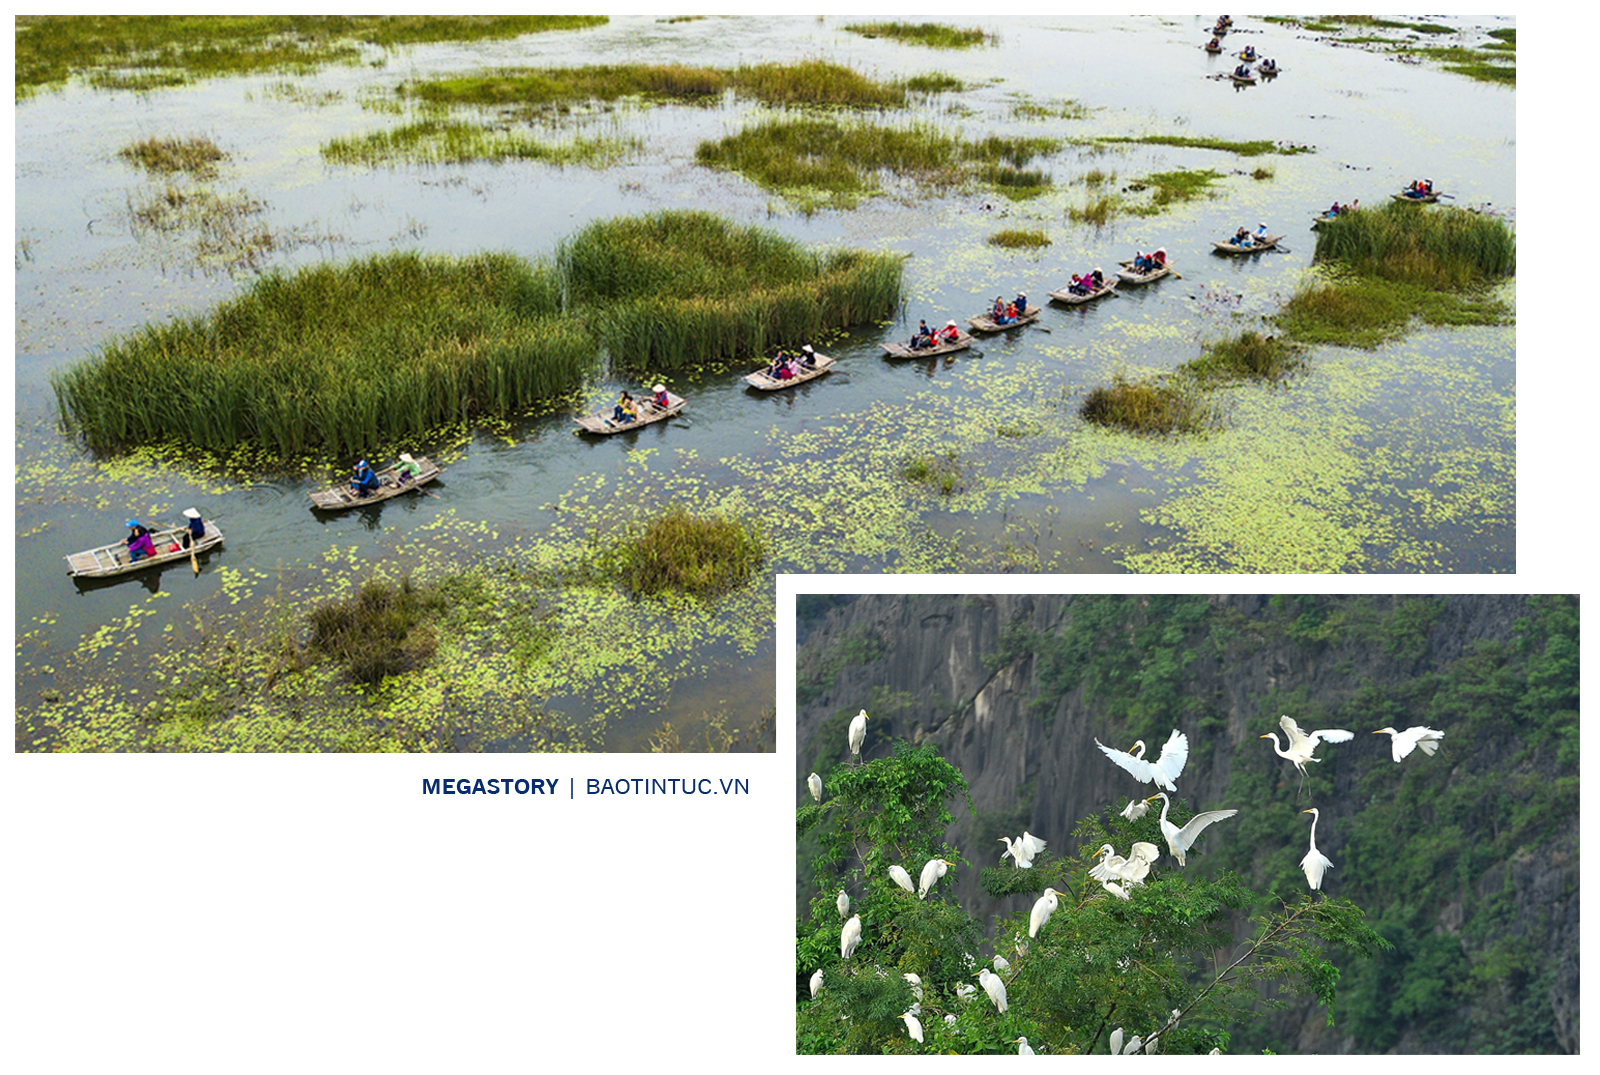 Đầm Vân Long tại huyện Gia Viễn, tỉnh Ninh Bình - khu bảo tồn thiên nhiên đất ngập nước lớn nhất vùng đồng bằng châu thổ Bắc Bộ.